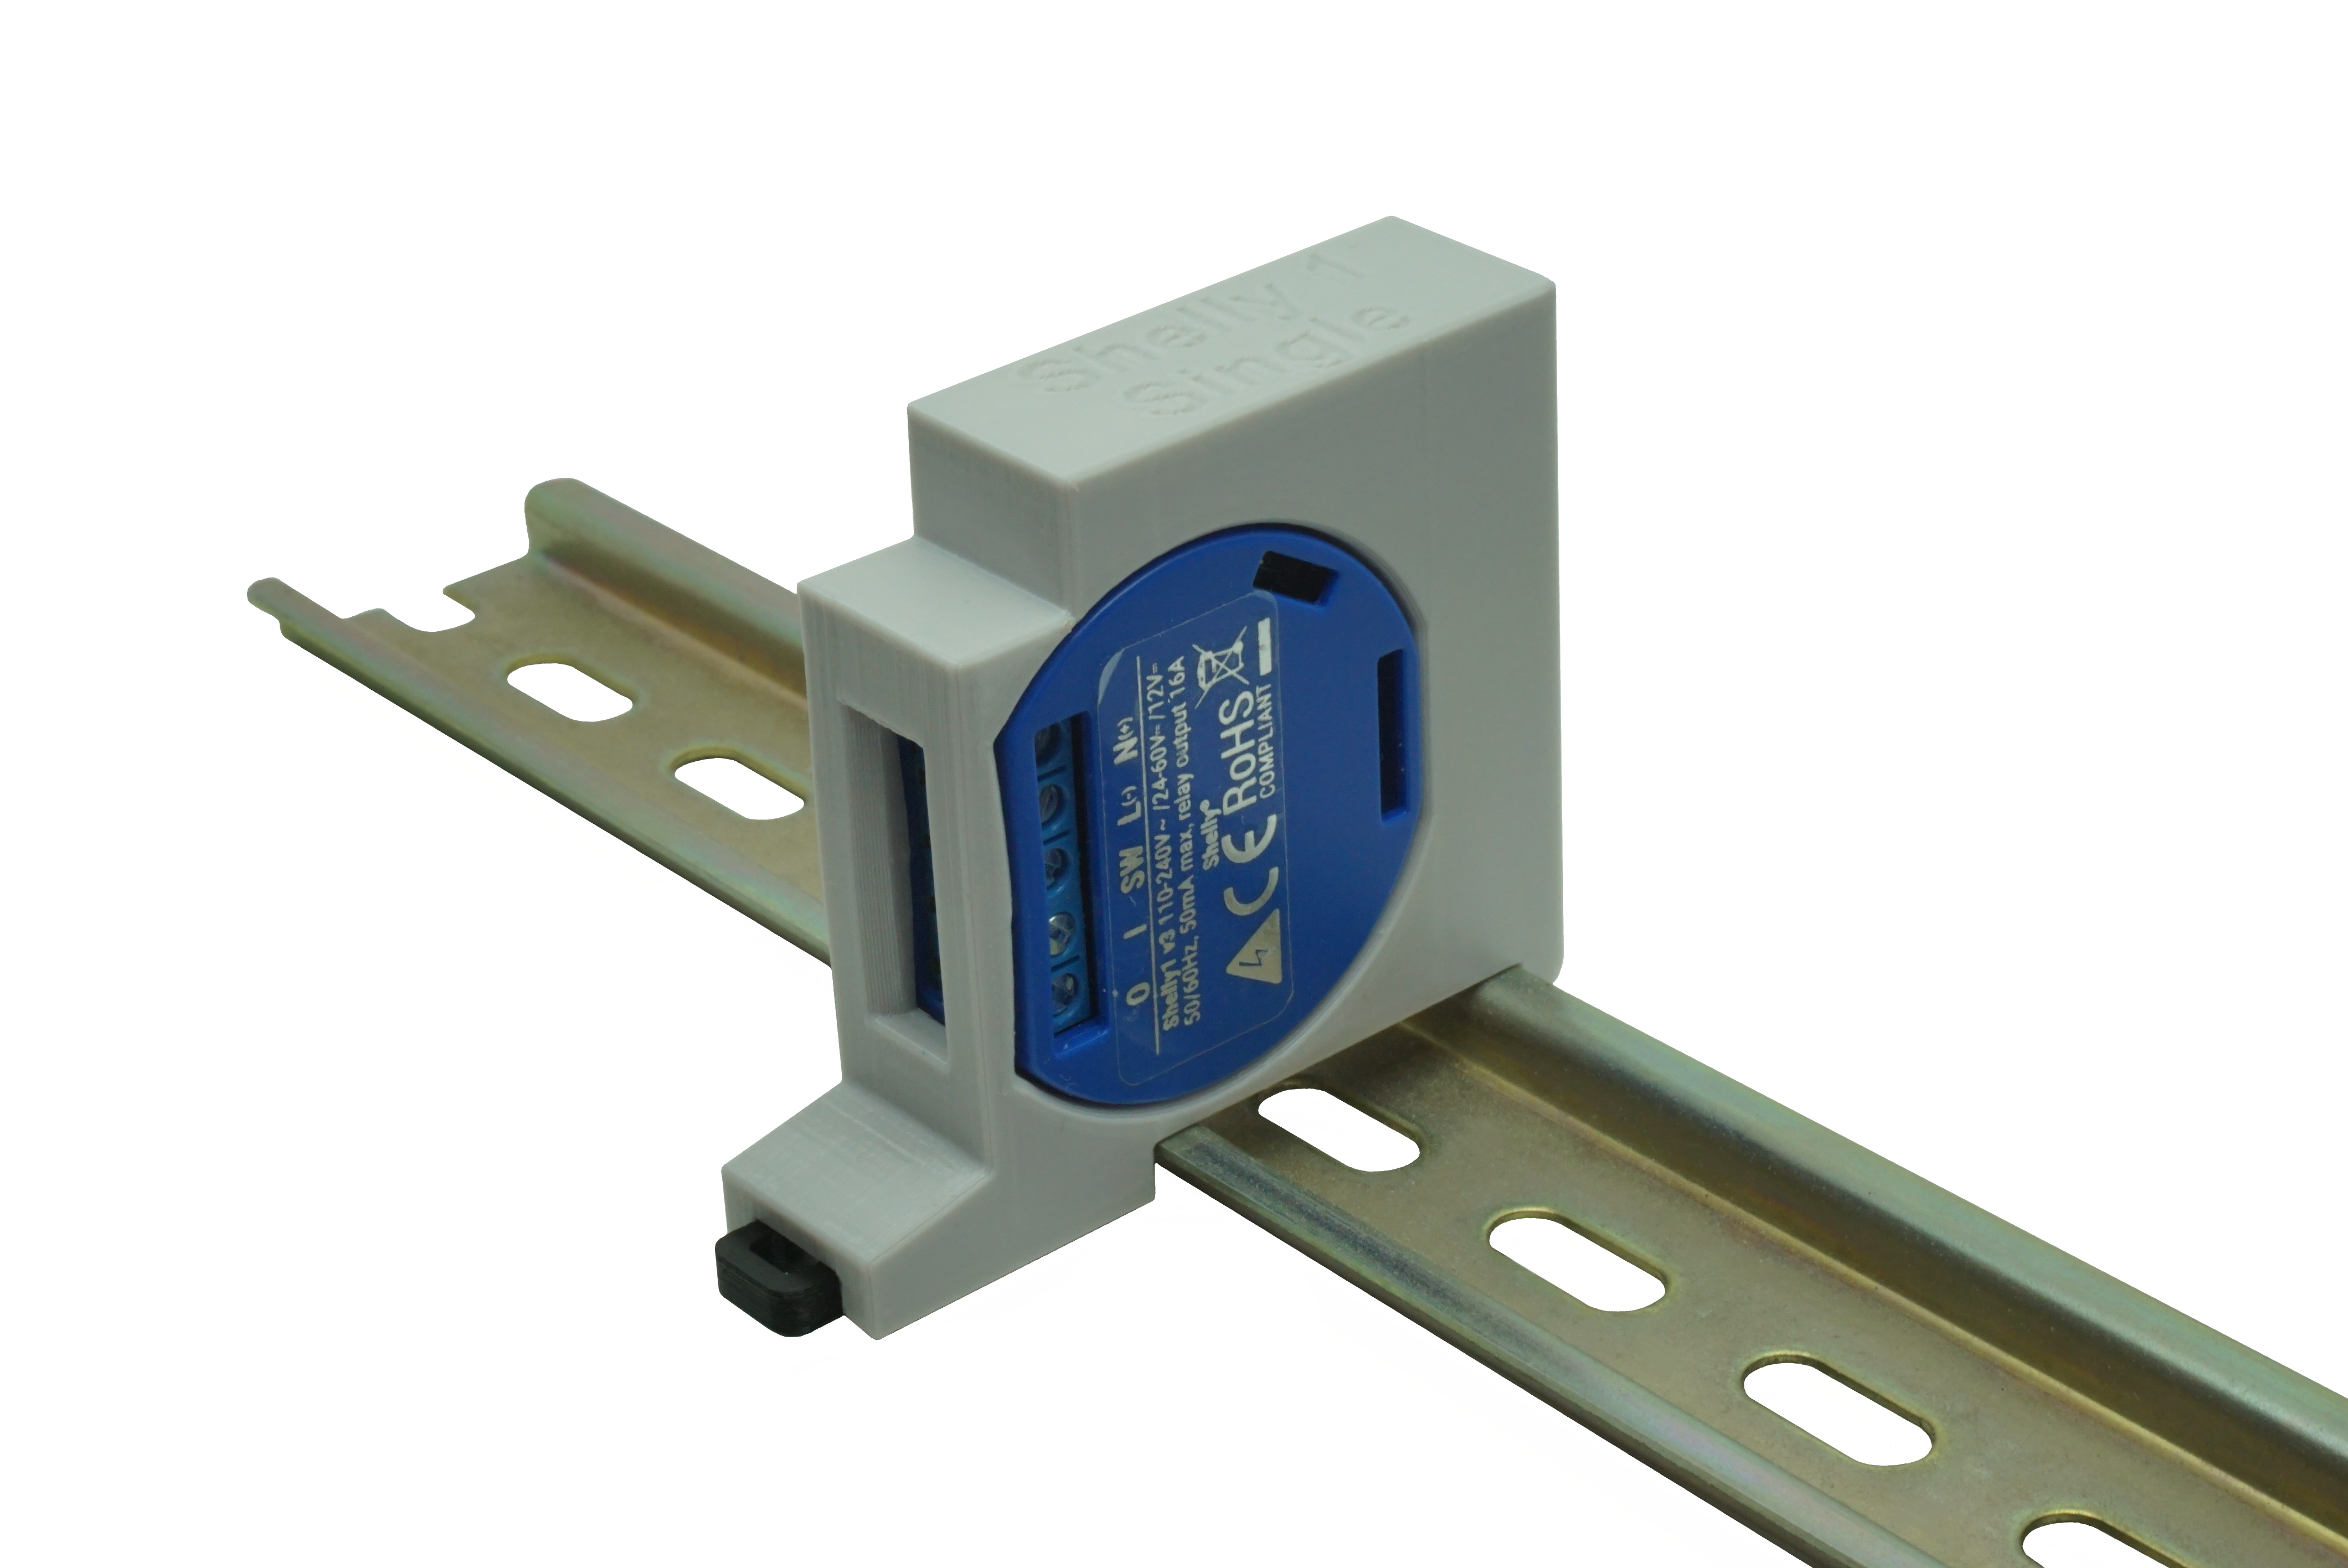 Hutschienenhalter / Adapter Single für Shelly 1 / 1 PM, für DIN Schiene 35mm, Farbe: Grau